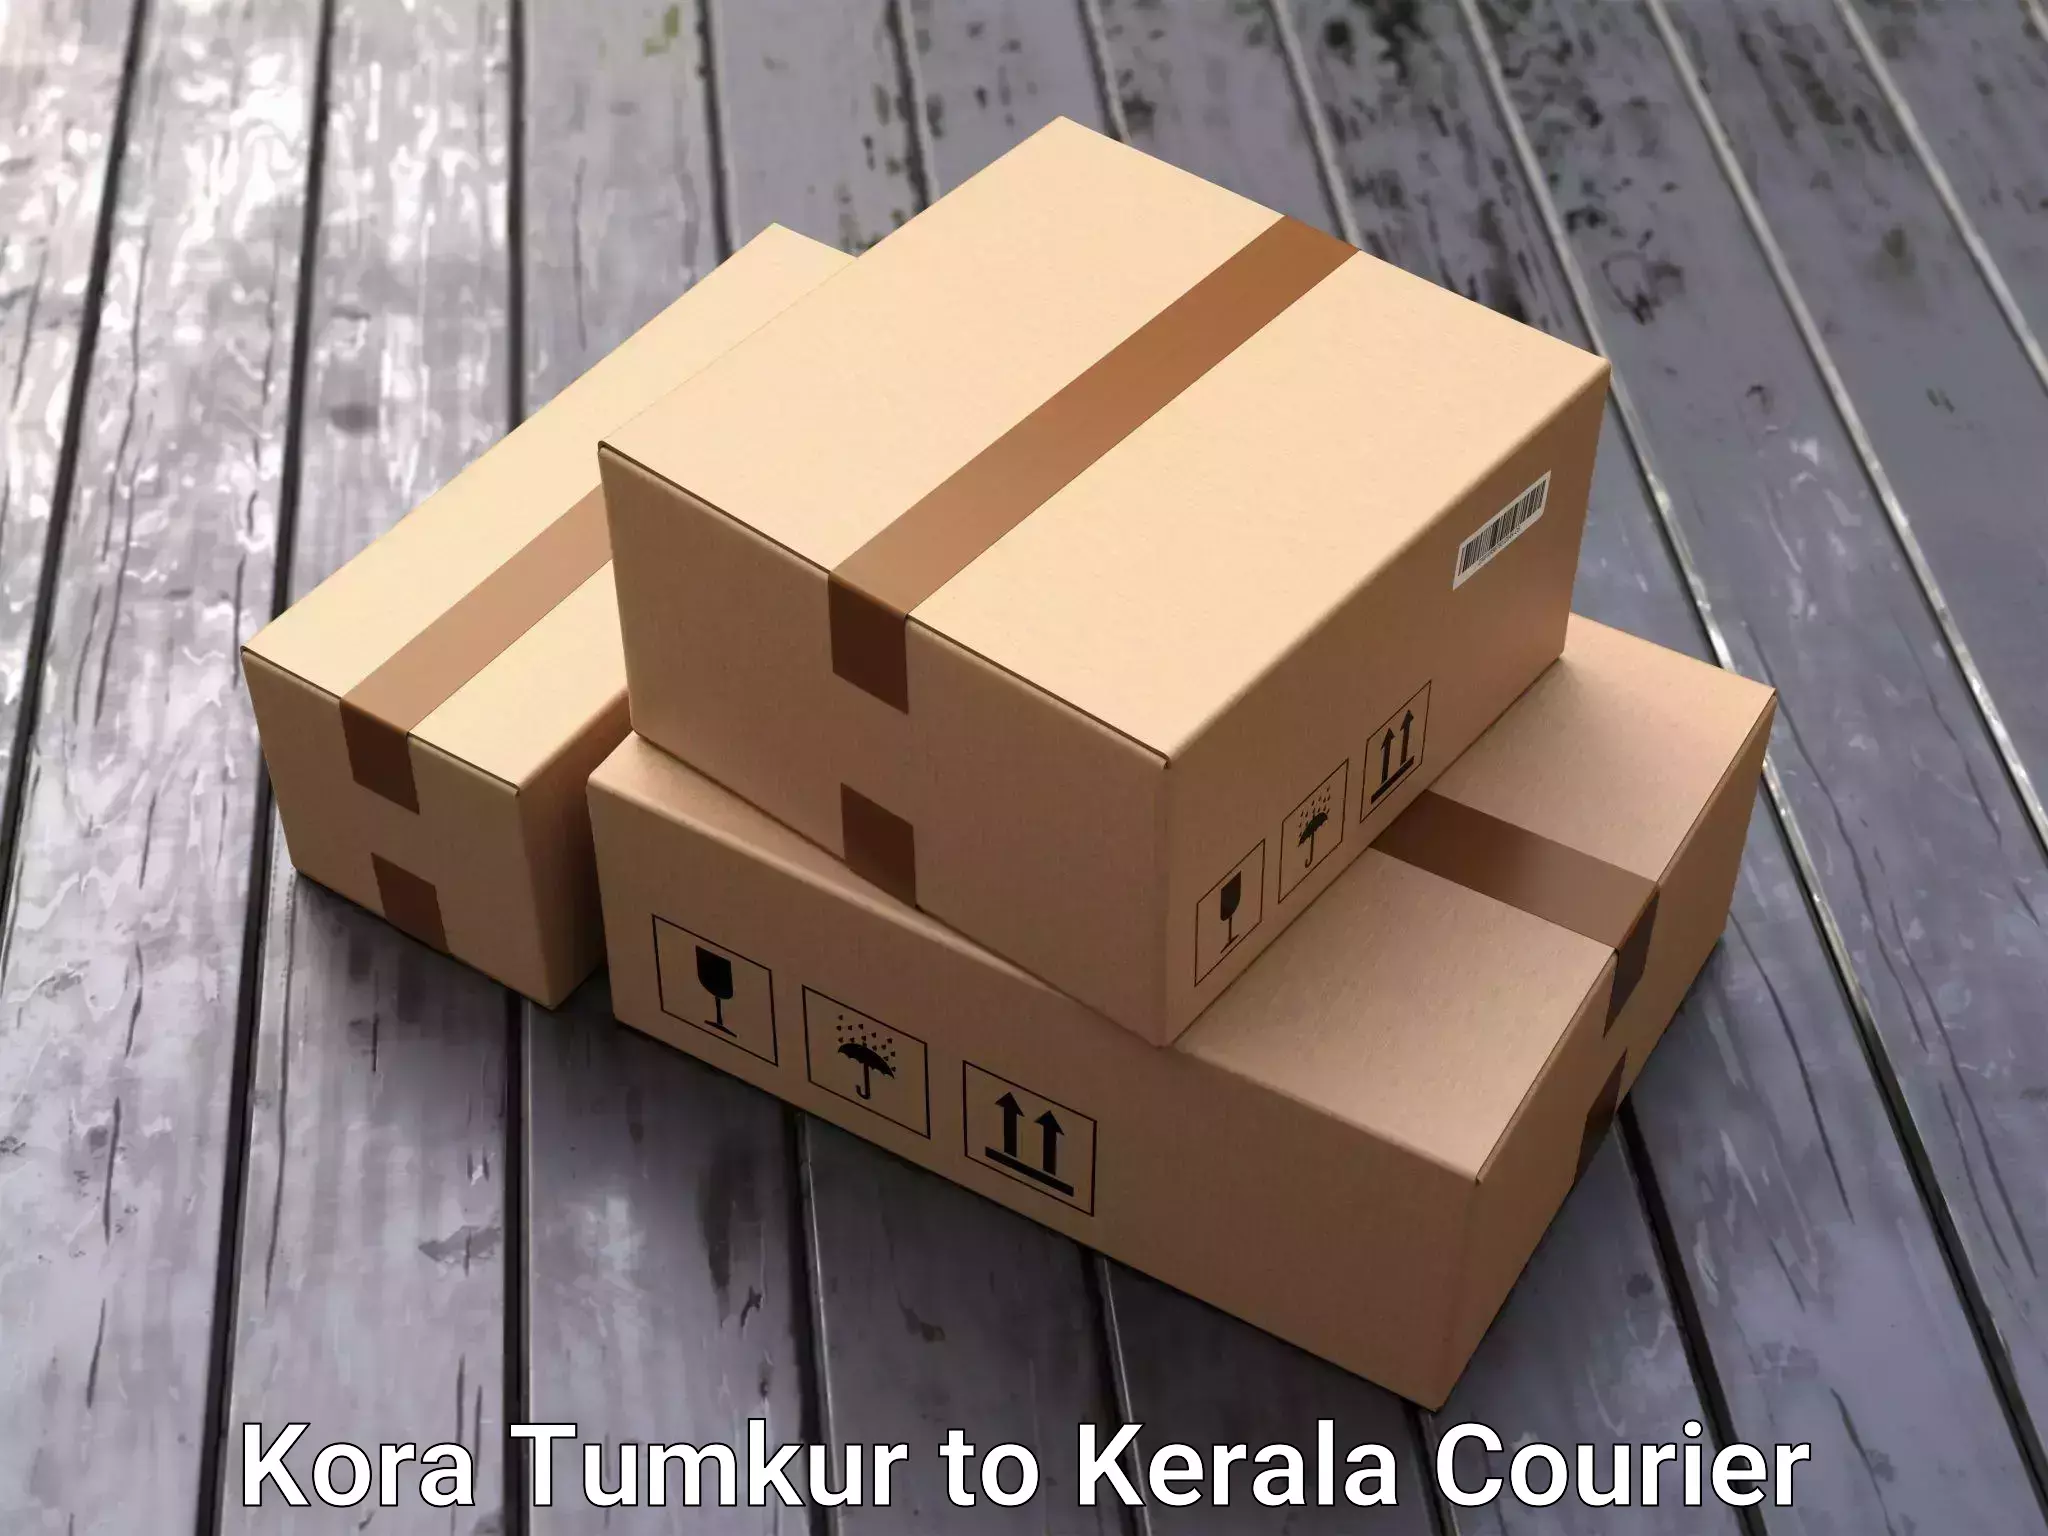 High-quality moving services Kora Tumkur to Mundakayam